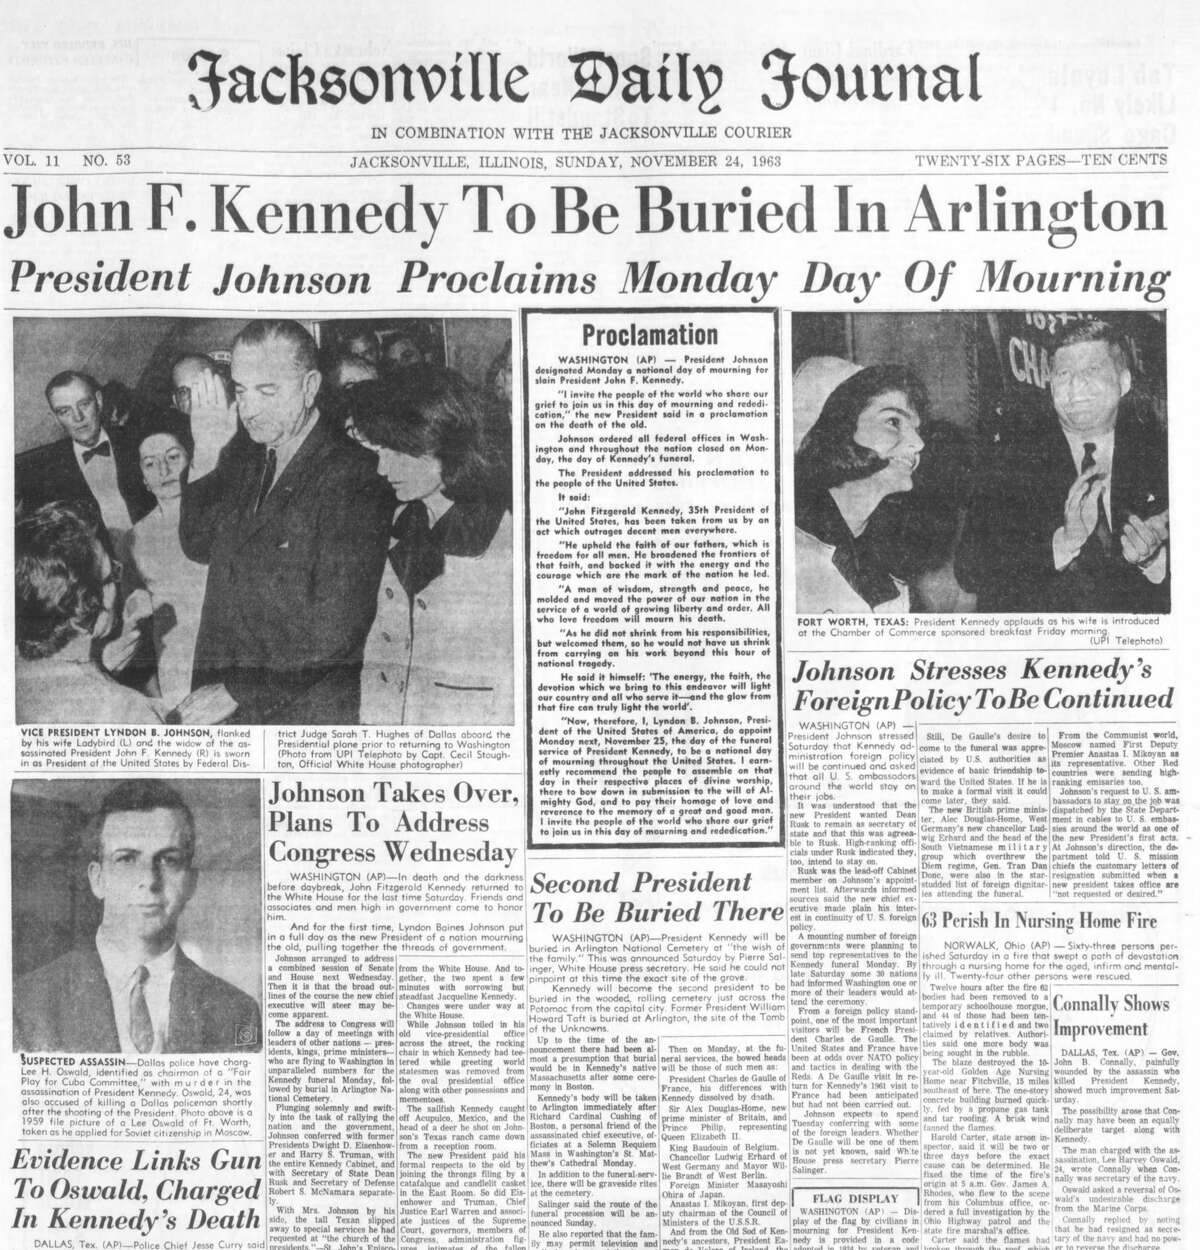 The Jacksonville Daily Journal — Jacksonville, Illinois